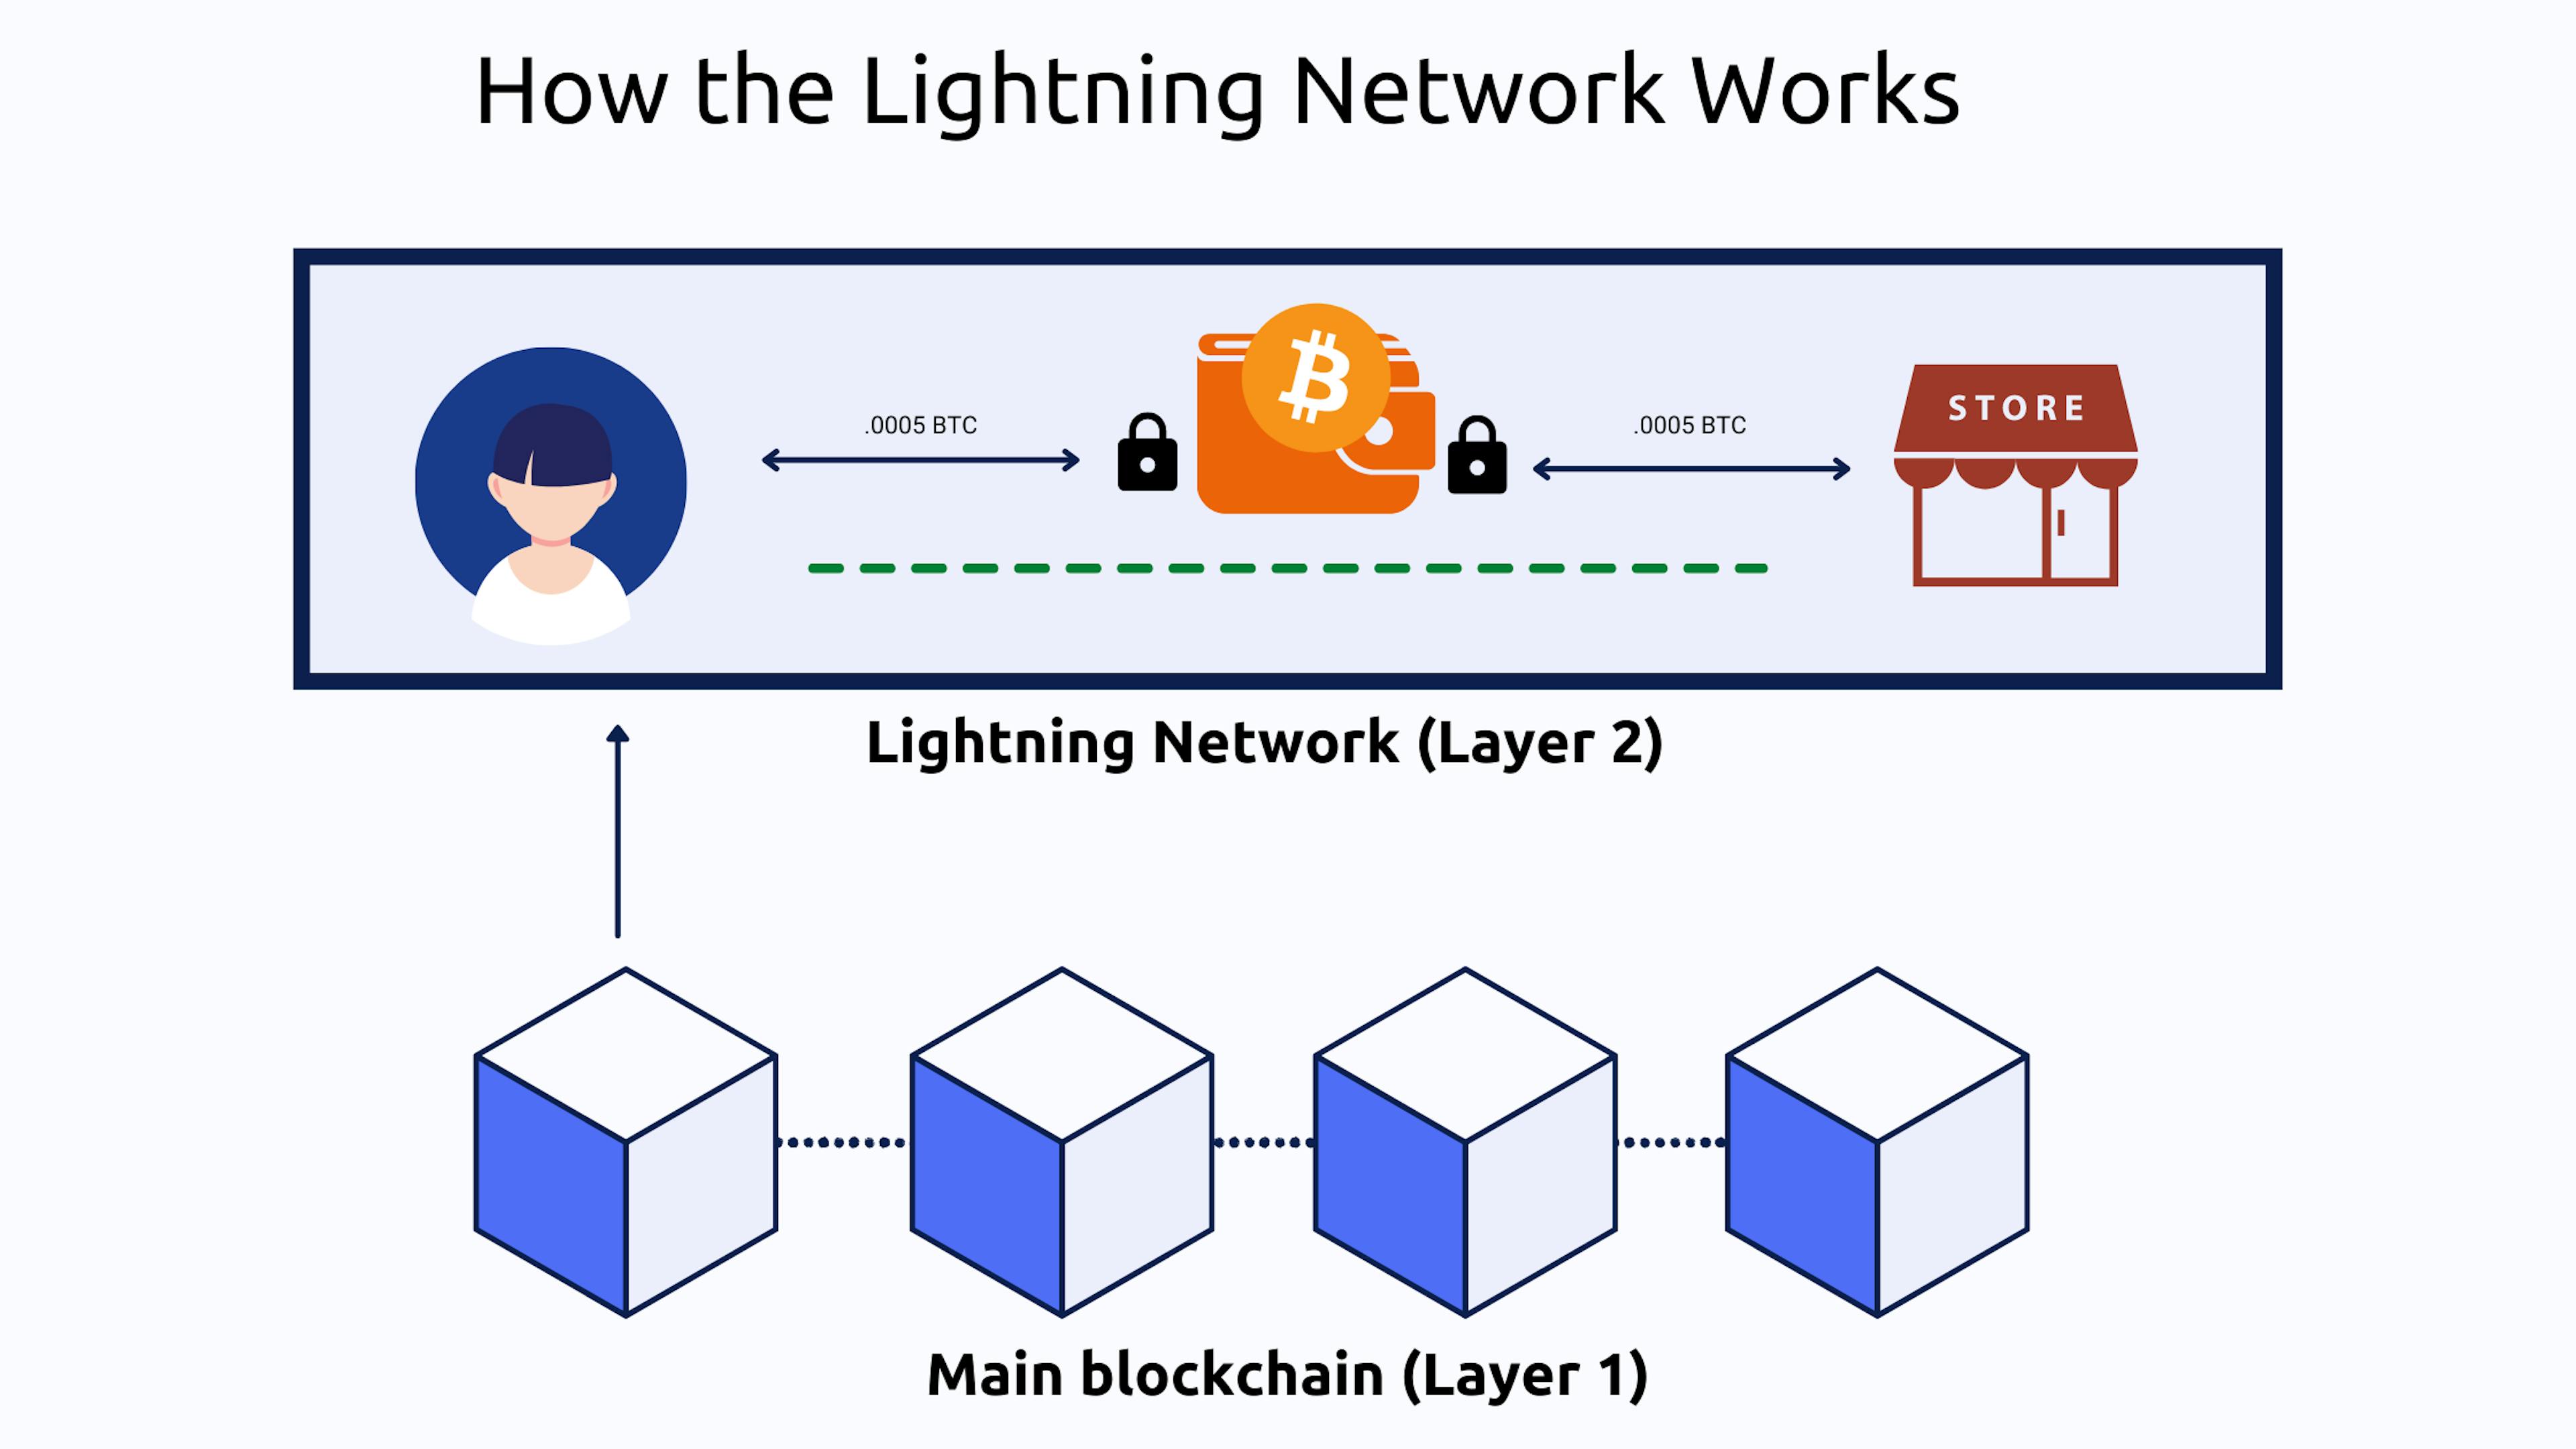 画像ソース: https://bitpay.com/blog/what-is-the-lightning-network/